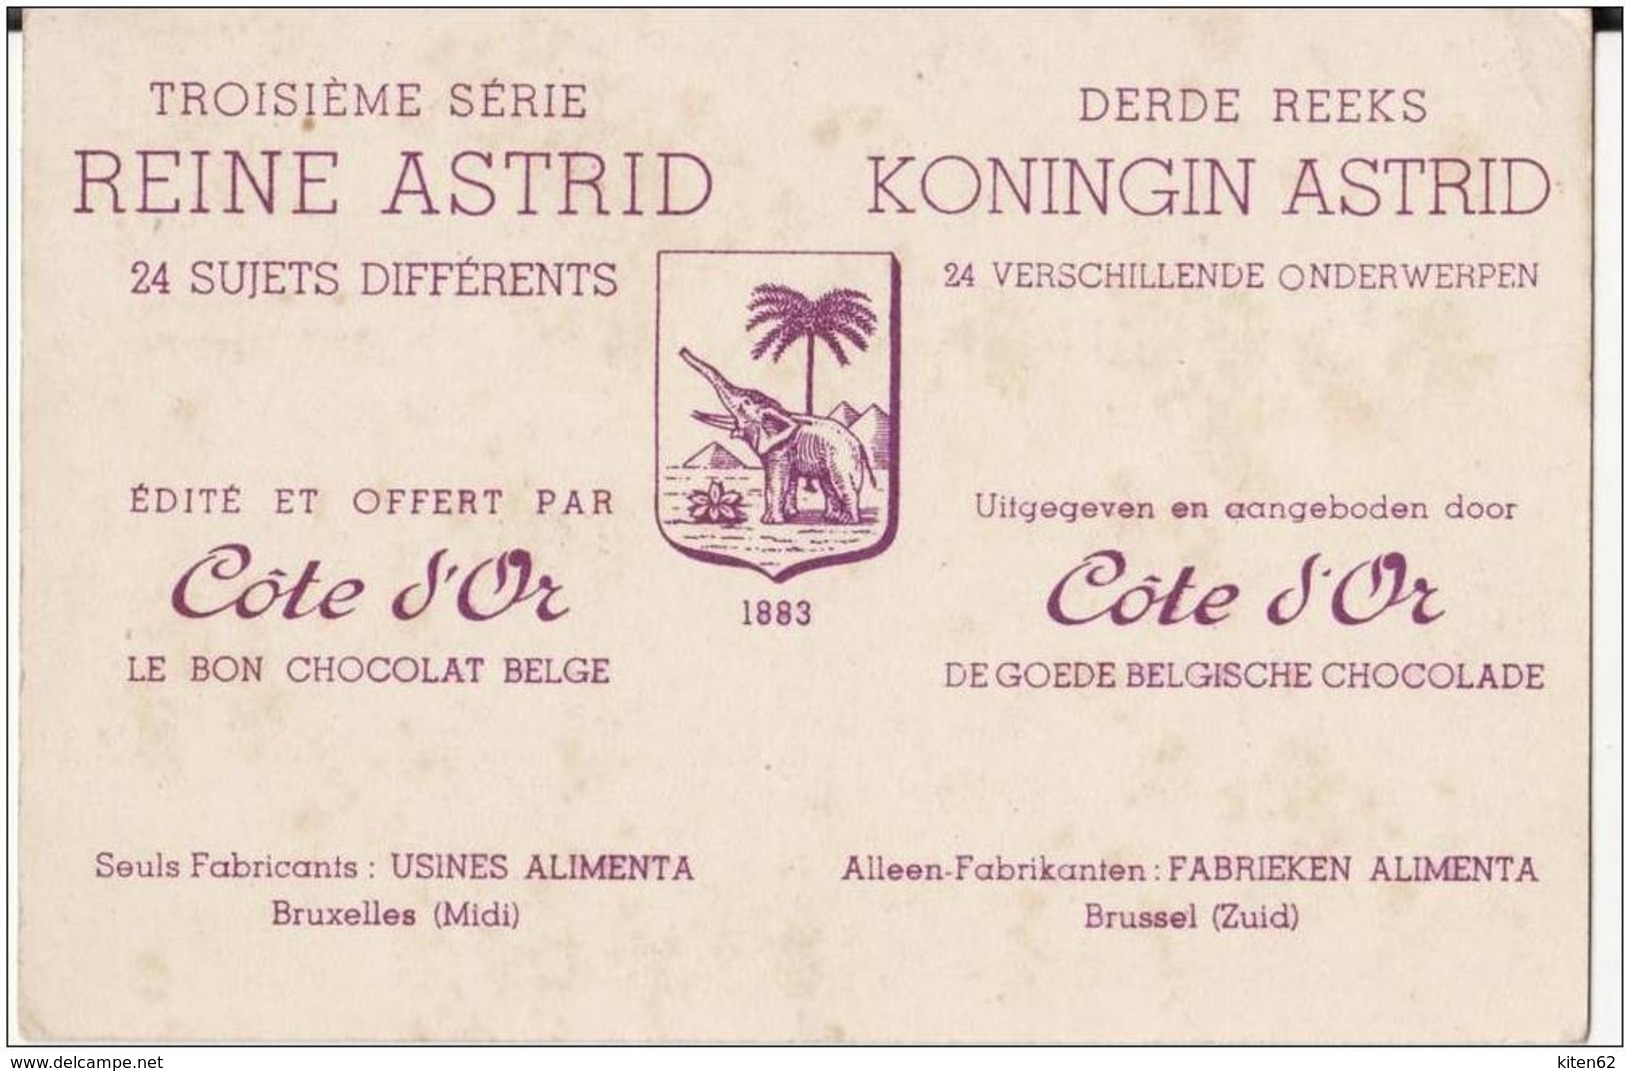 Belgique-Publicité Côte d'Or.7 cartes publicitaires série Reine Astrid.